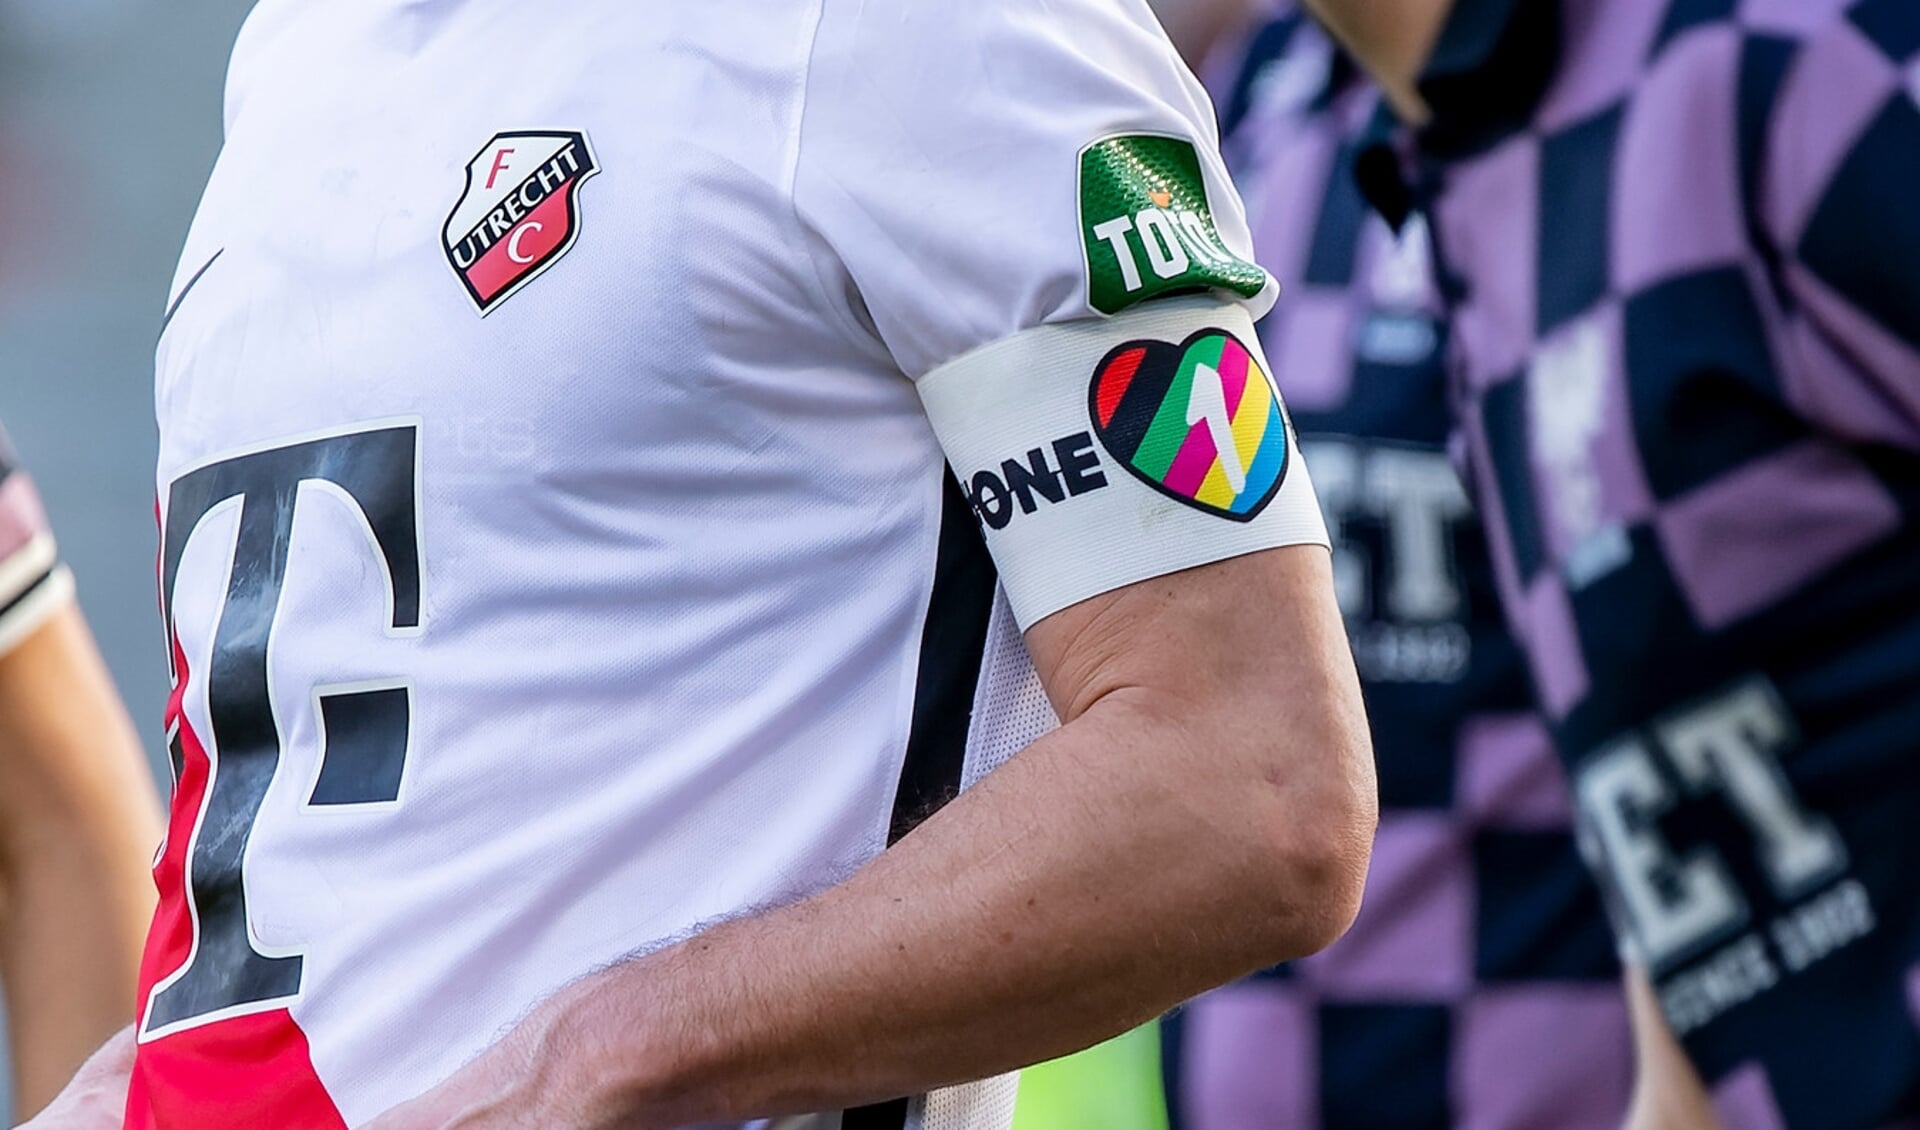 'De OneLove campagne van de KNVB die staat voor verbinding en tegen alle vormen van discriminatie in het voetbal. Waarom geldt deze gedachte dan niet voor het legale beroep van sekswerk?'